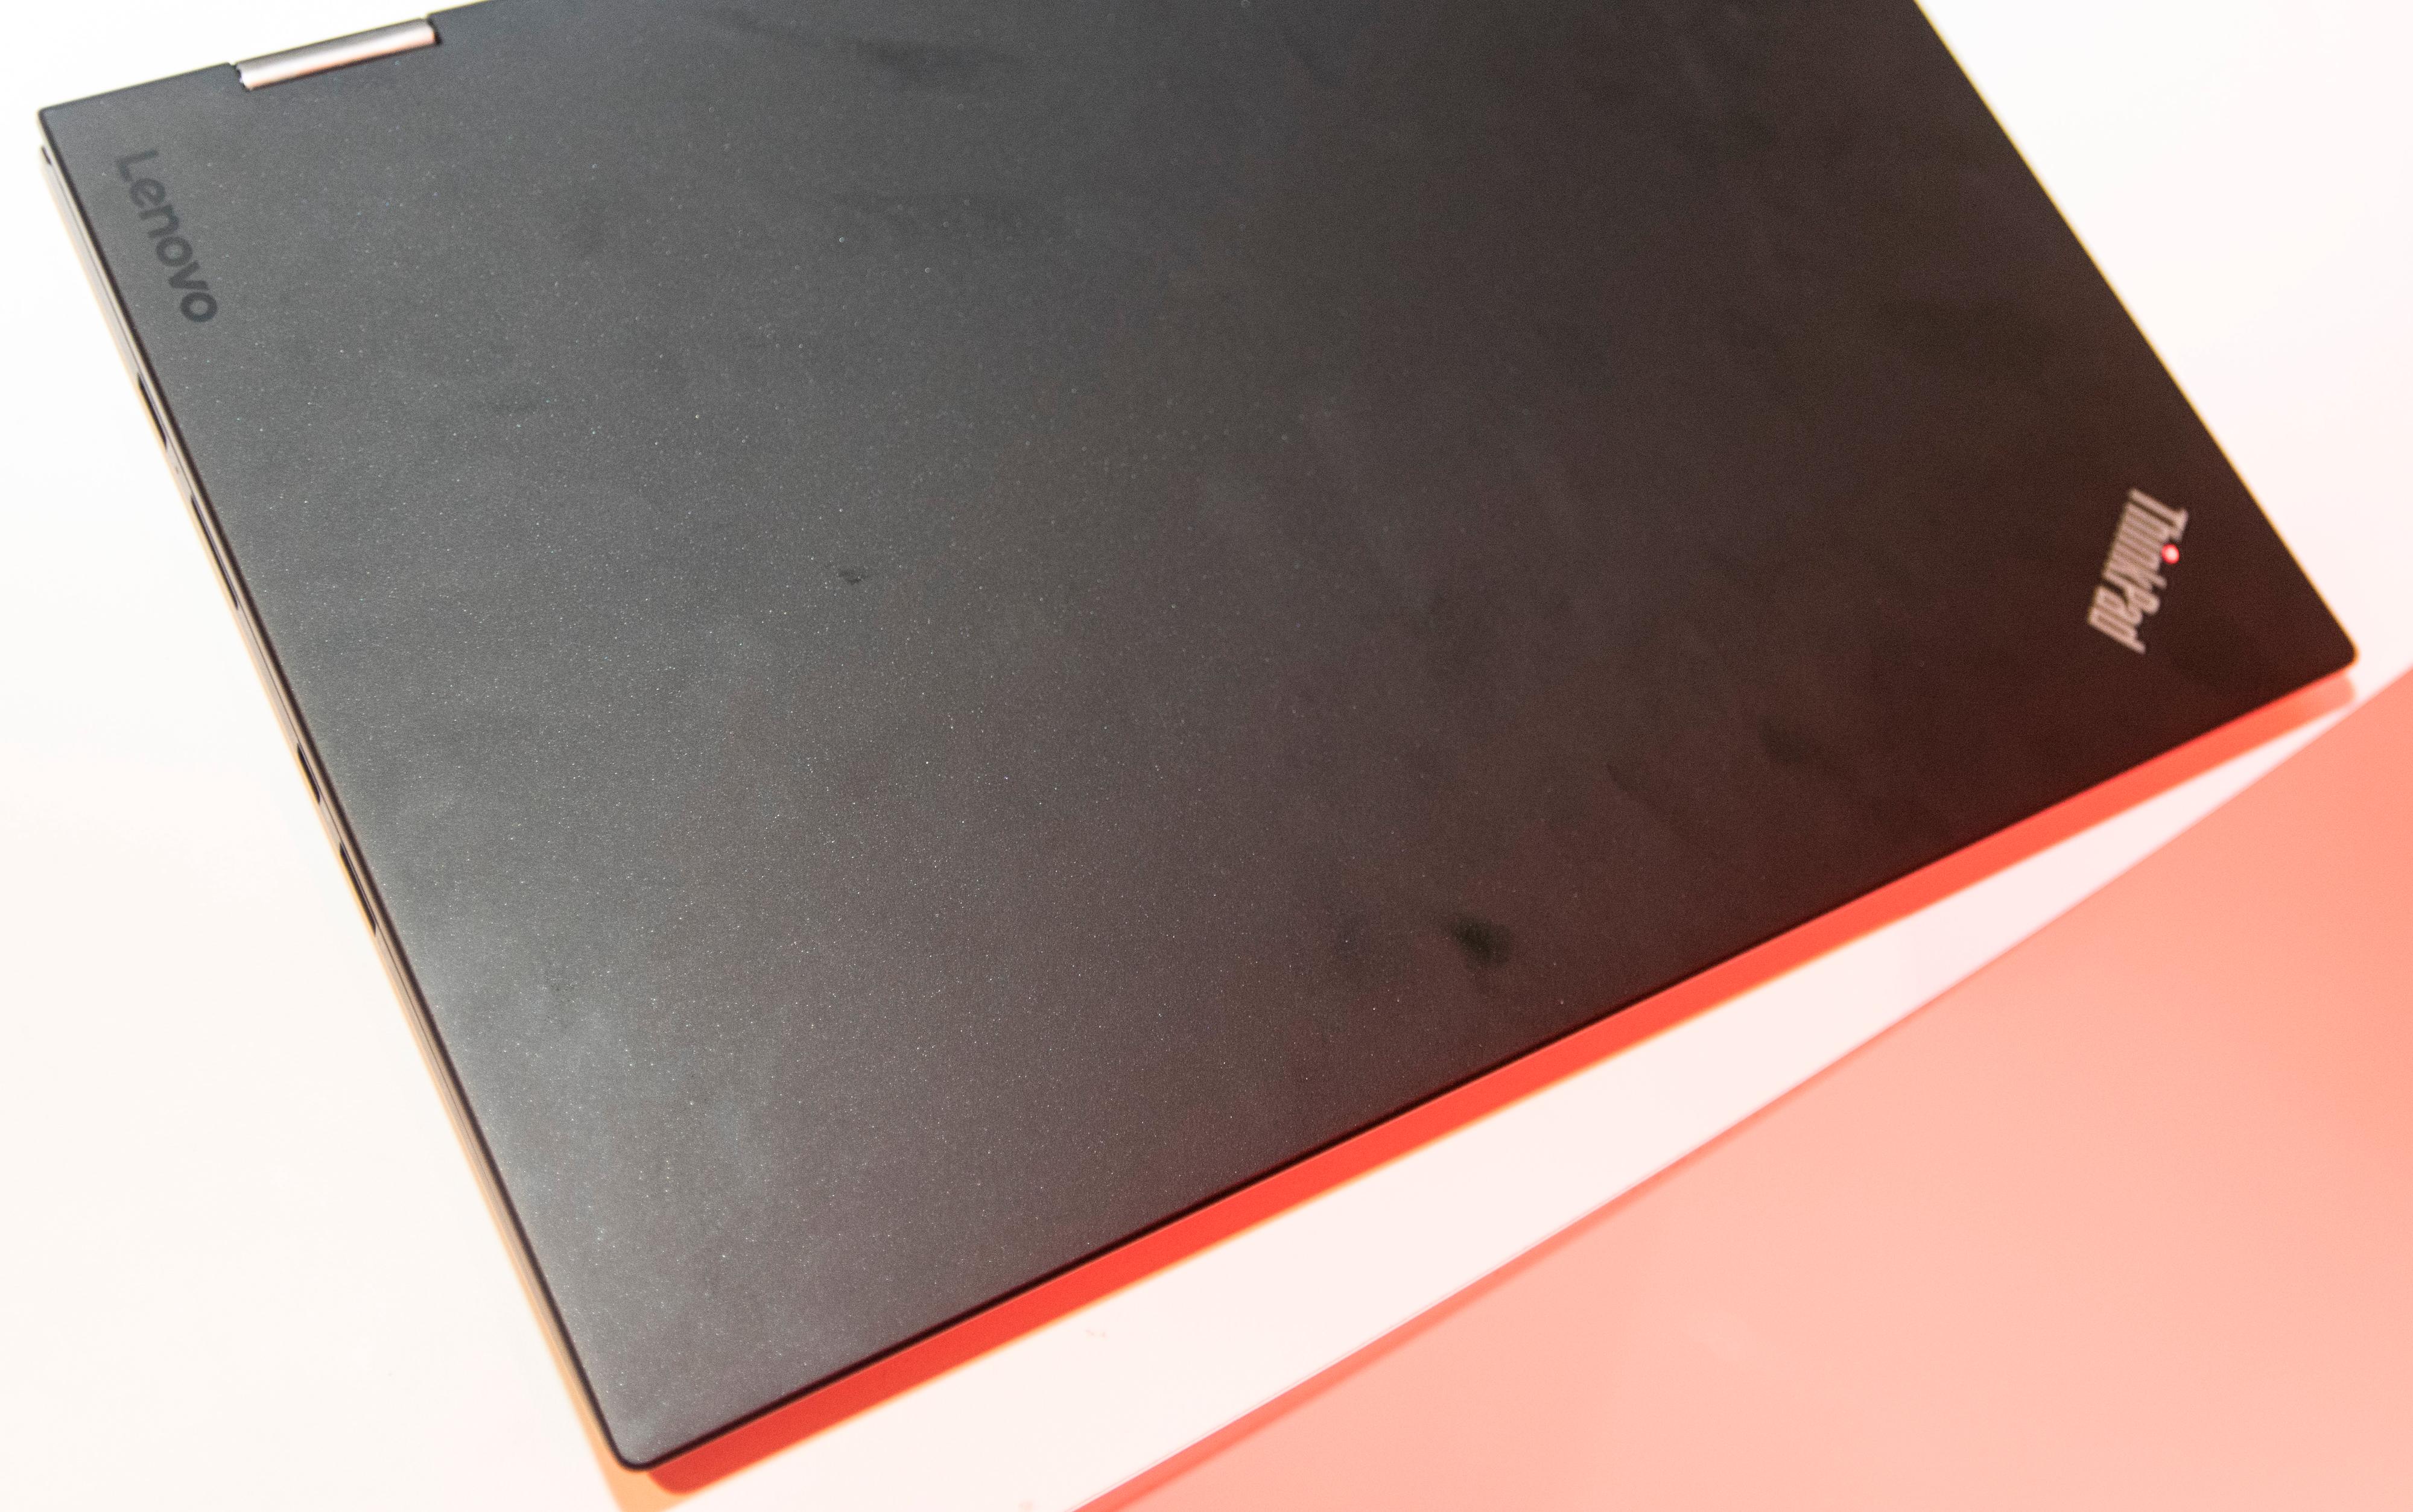 Designen er akkurat slik vi kjenner ThinkPad-serien. Ingen blinkende lys eller farger, bare den klassiske røde prikken over ThinkPad-logoen og ellers matt, svart plast.